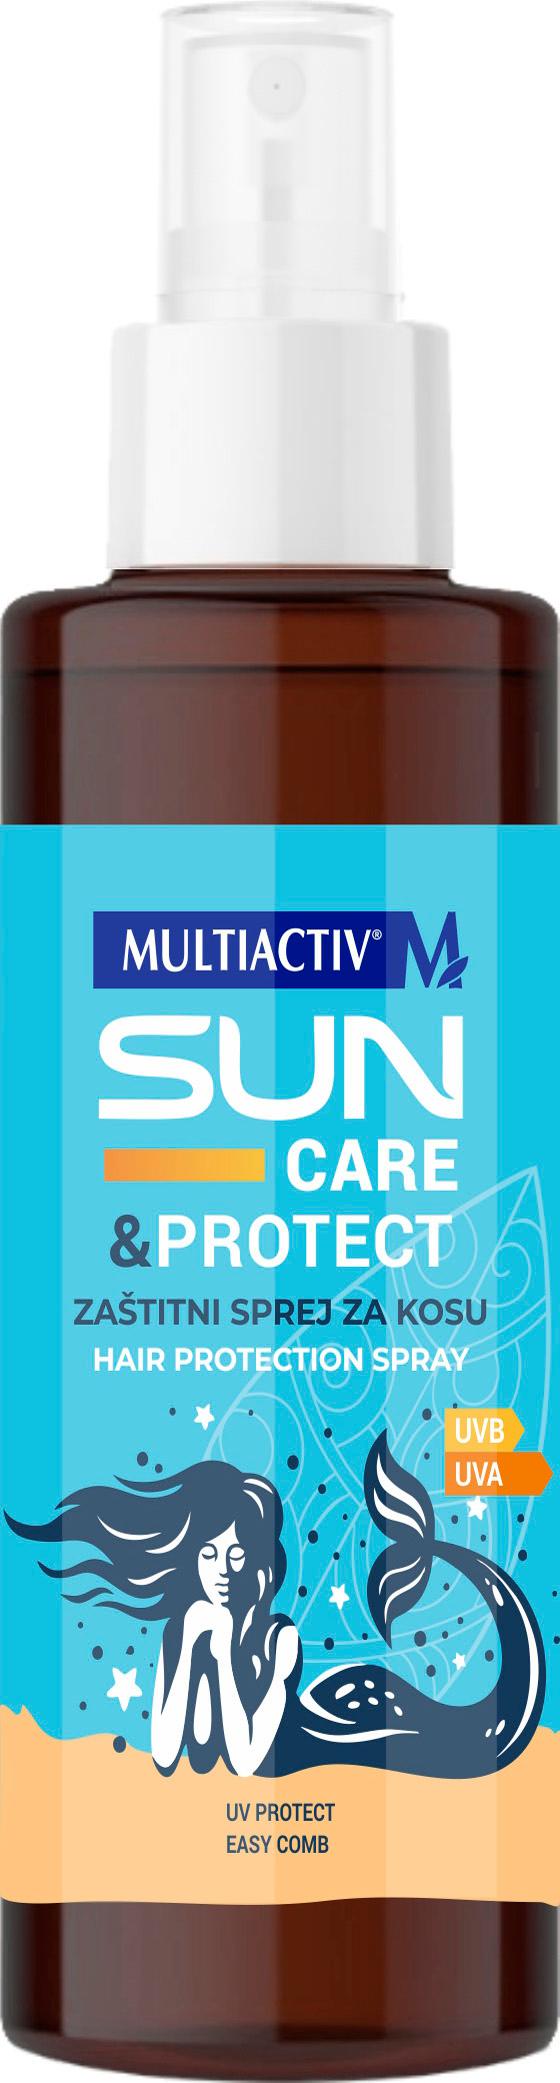 MULTIACTIV Zaštitni sprej za kosu Sun Care&Protect 100ml